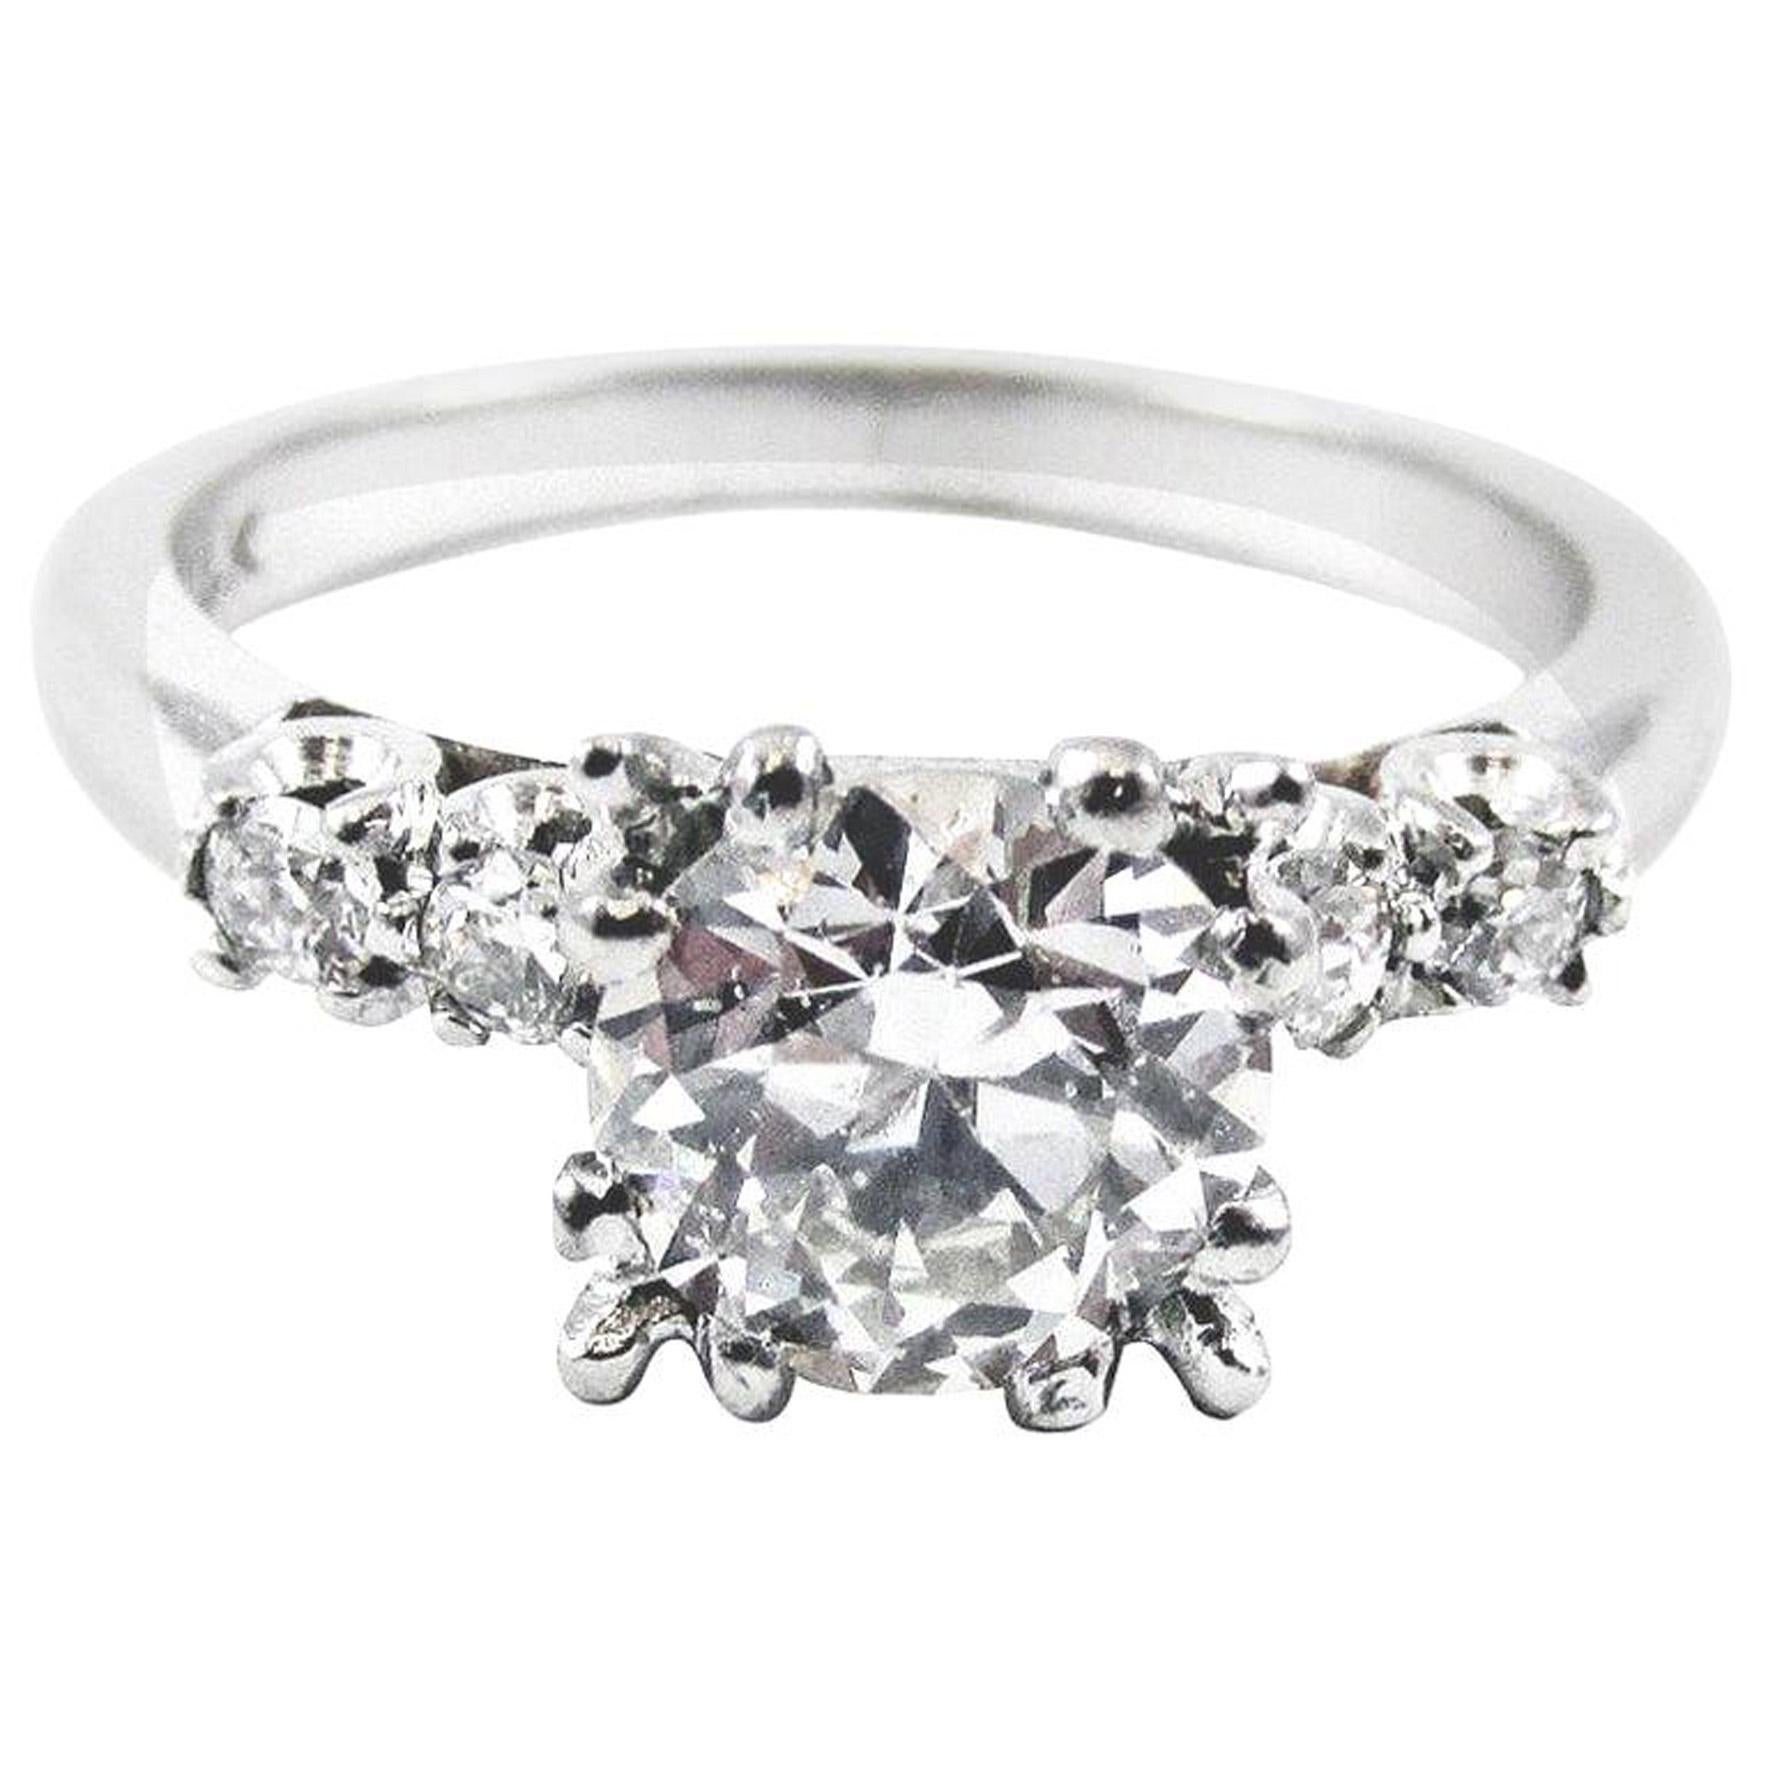  Old European Cut 1.10 Carat GIA Certified Vintage Diamond Engagement Ring 1